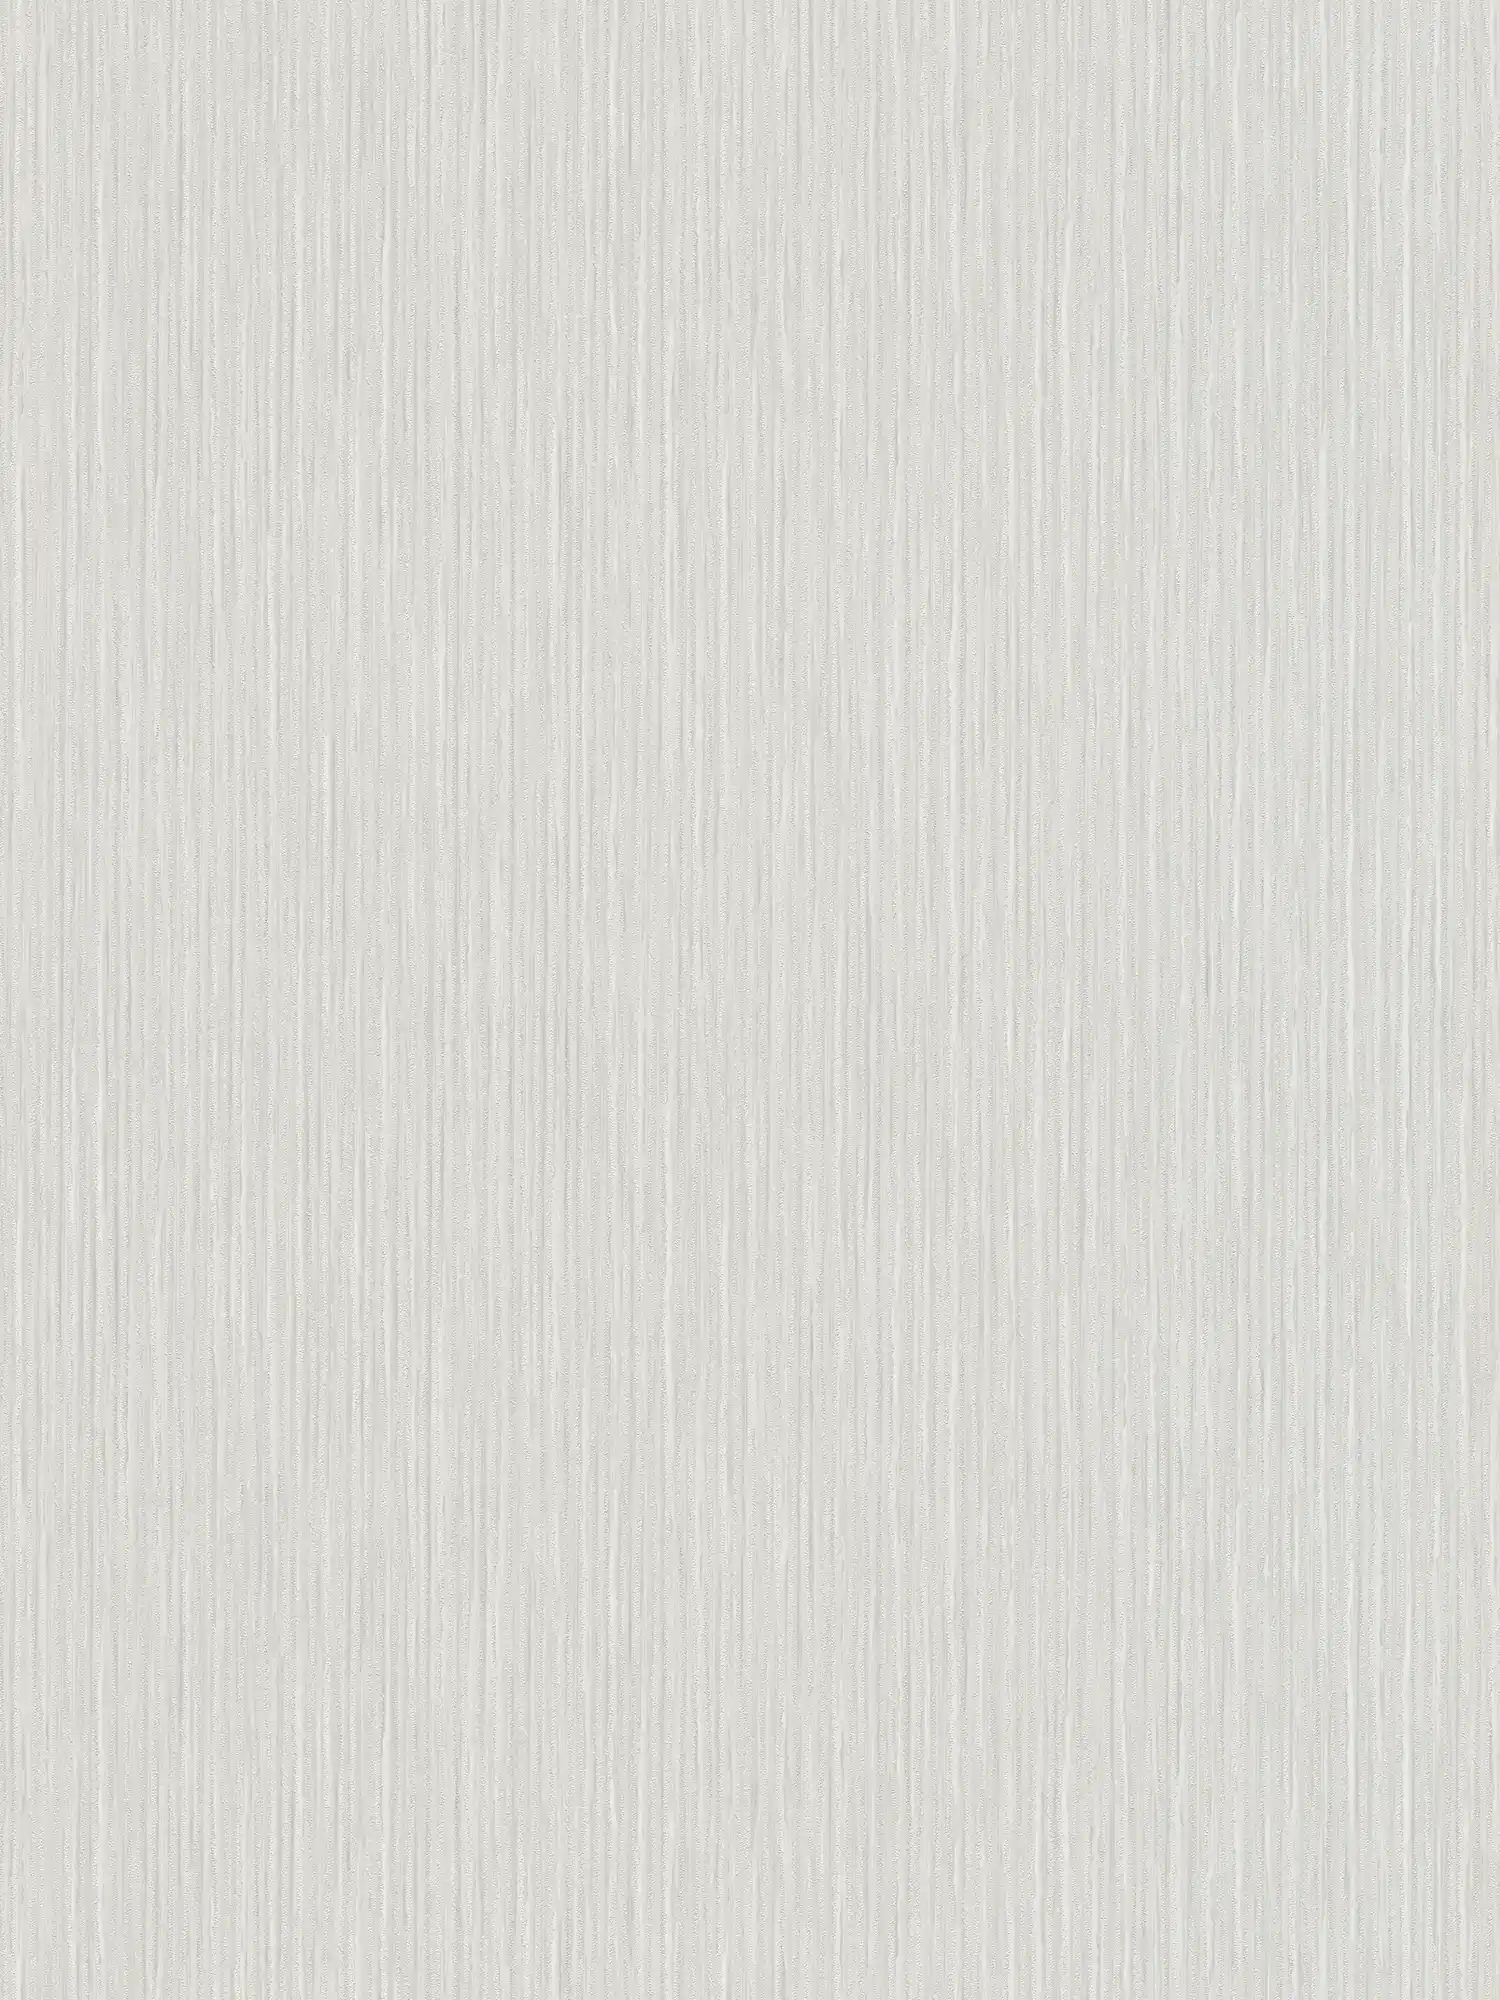 Papel pintado no tejido Melange gris claro metálico con efecto integral
